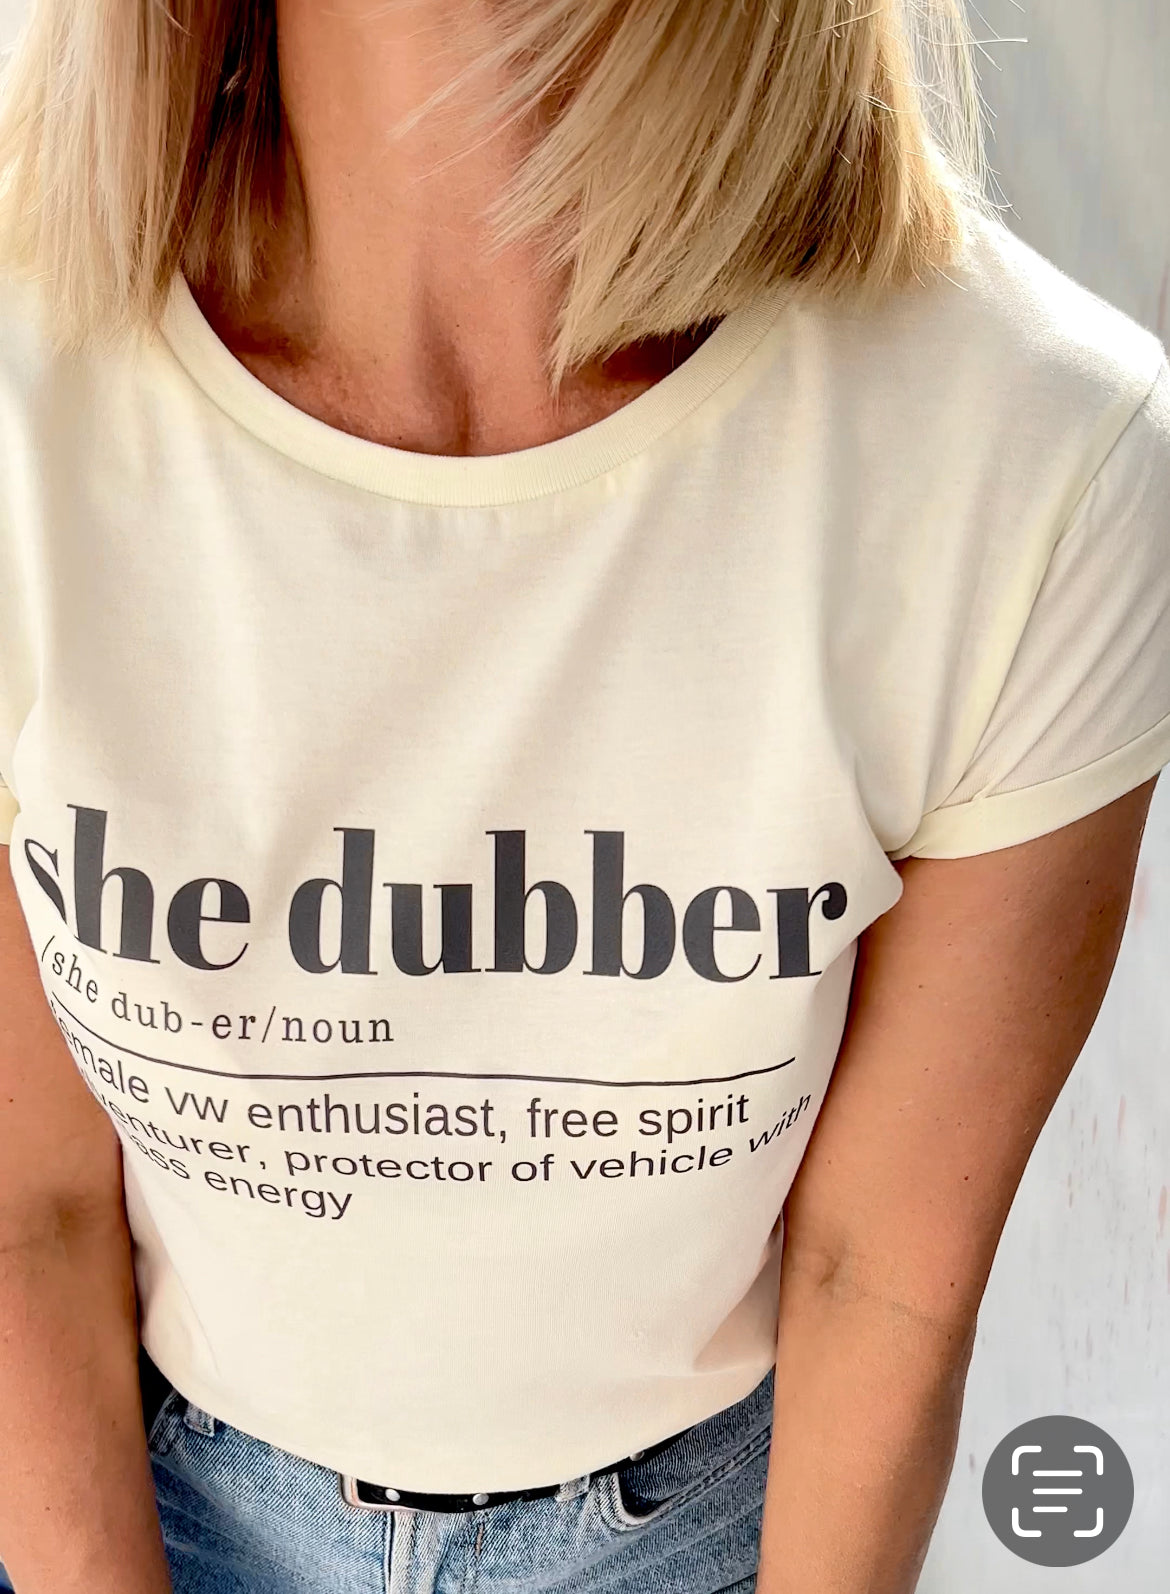 She dubber definition t shirt, Volkswagen women apparell